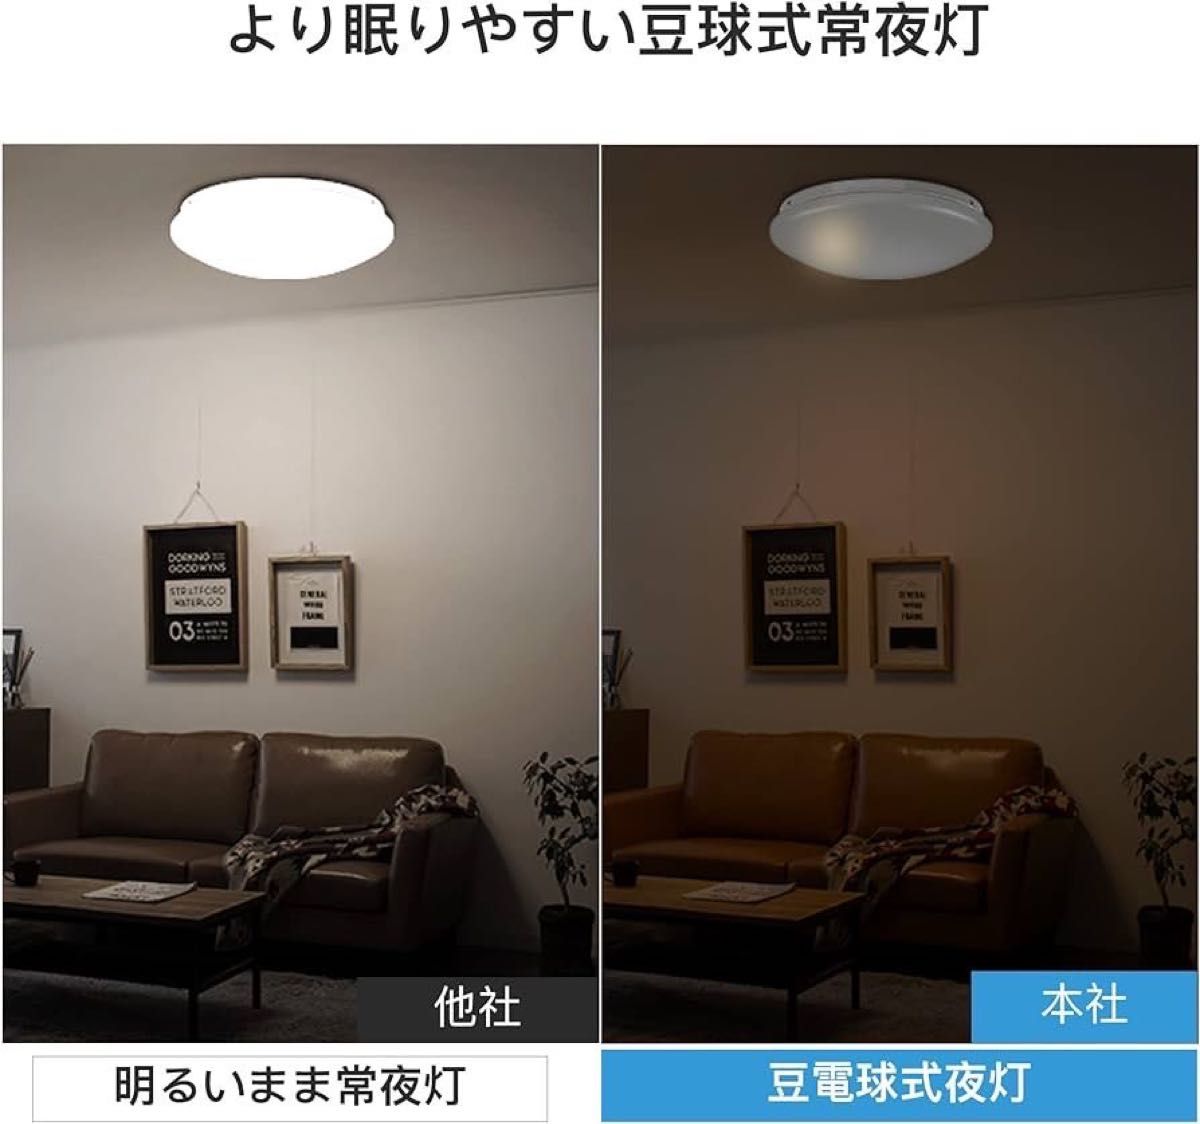 LEDシーリングライト 6畳 リモコン付 24w 調色調光 天井照明 照明器具